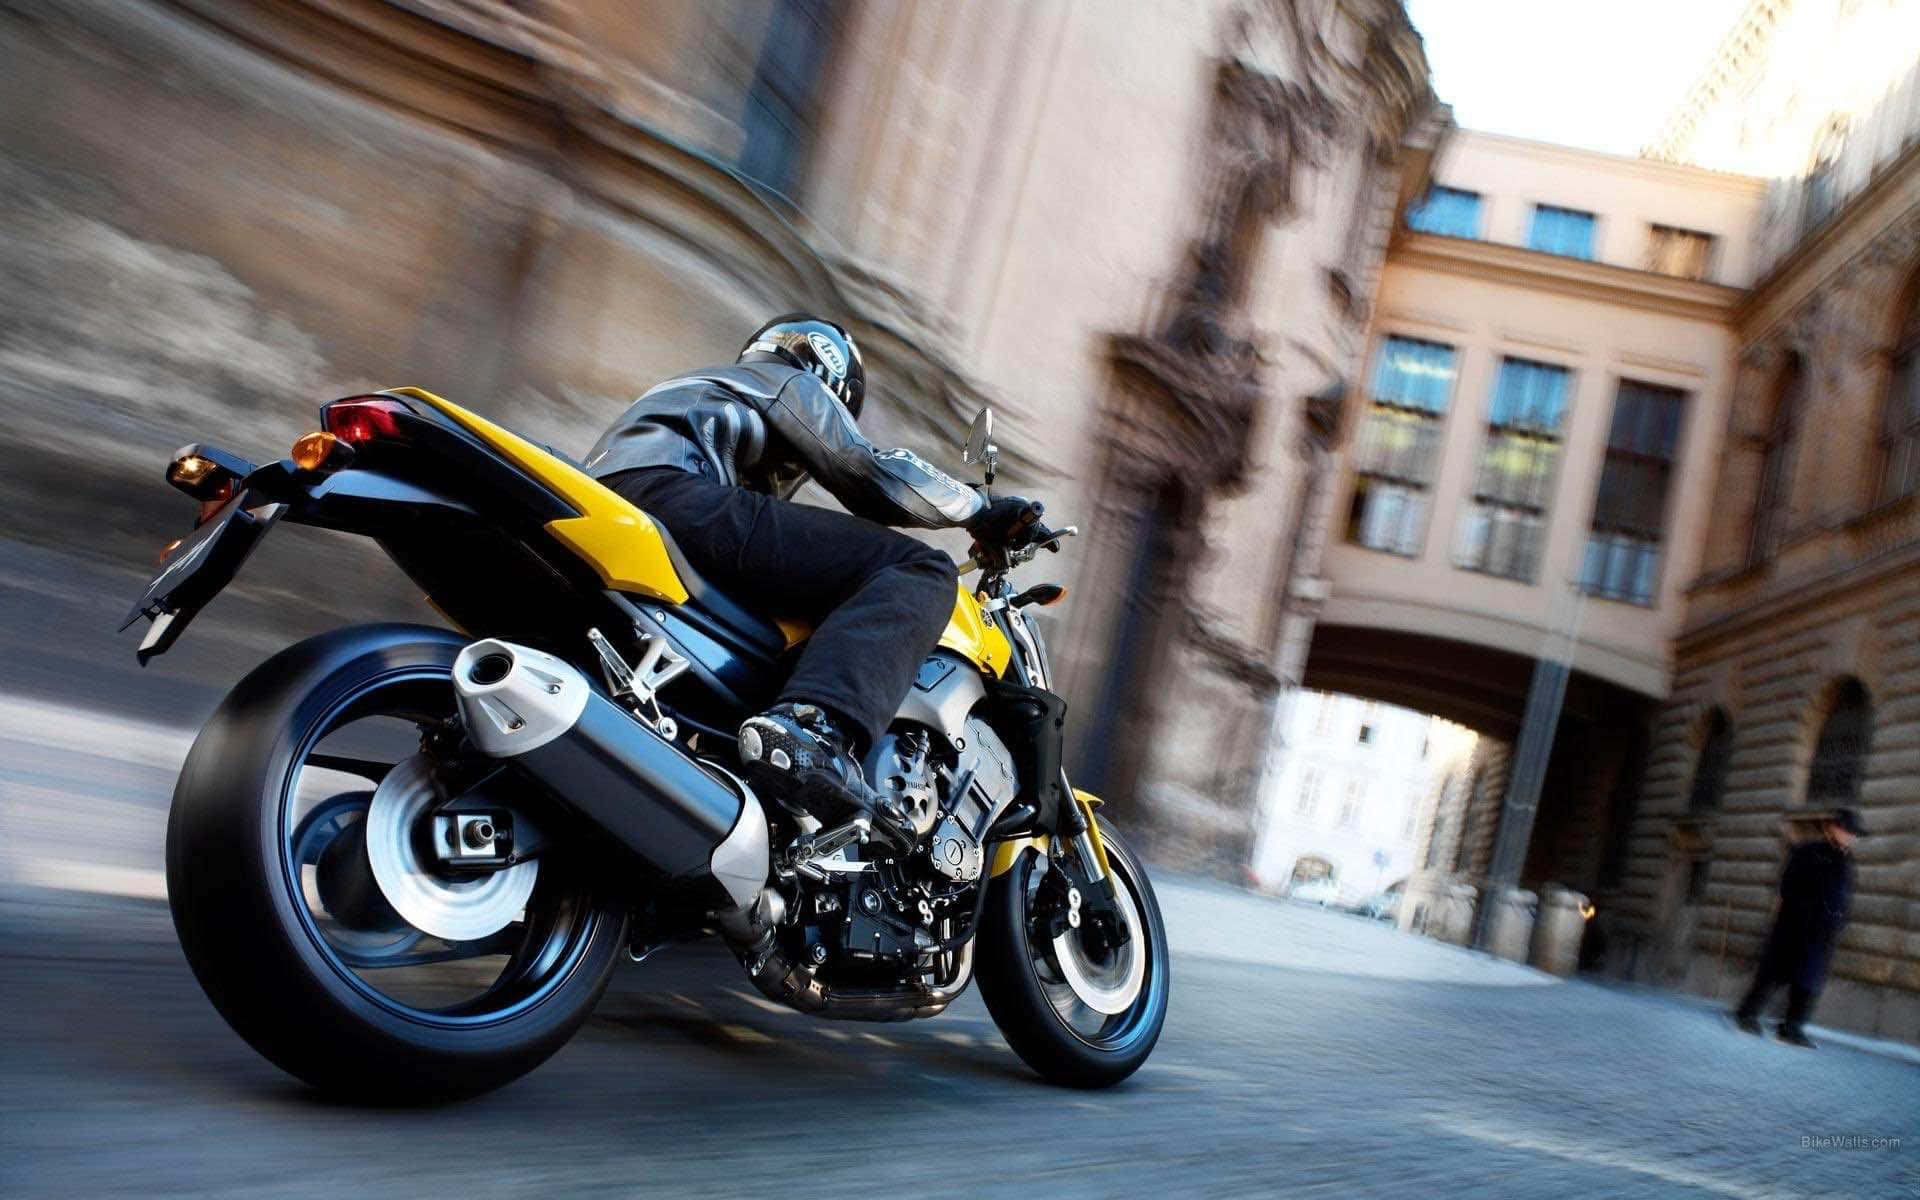 Et billede af en person på motorcykel, der suser gennem byen.